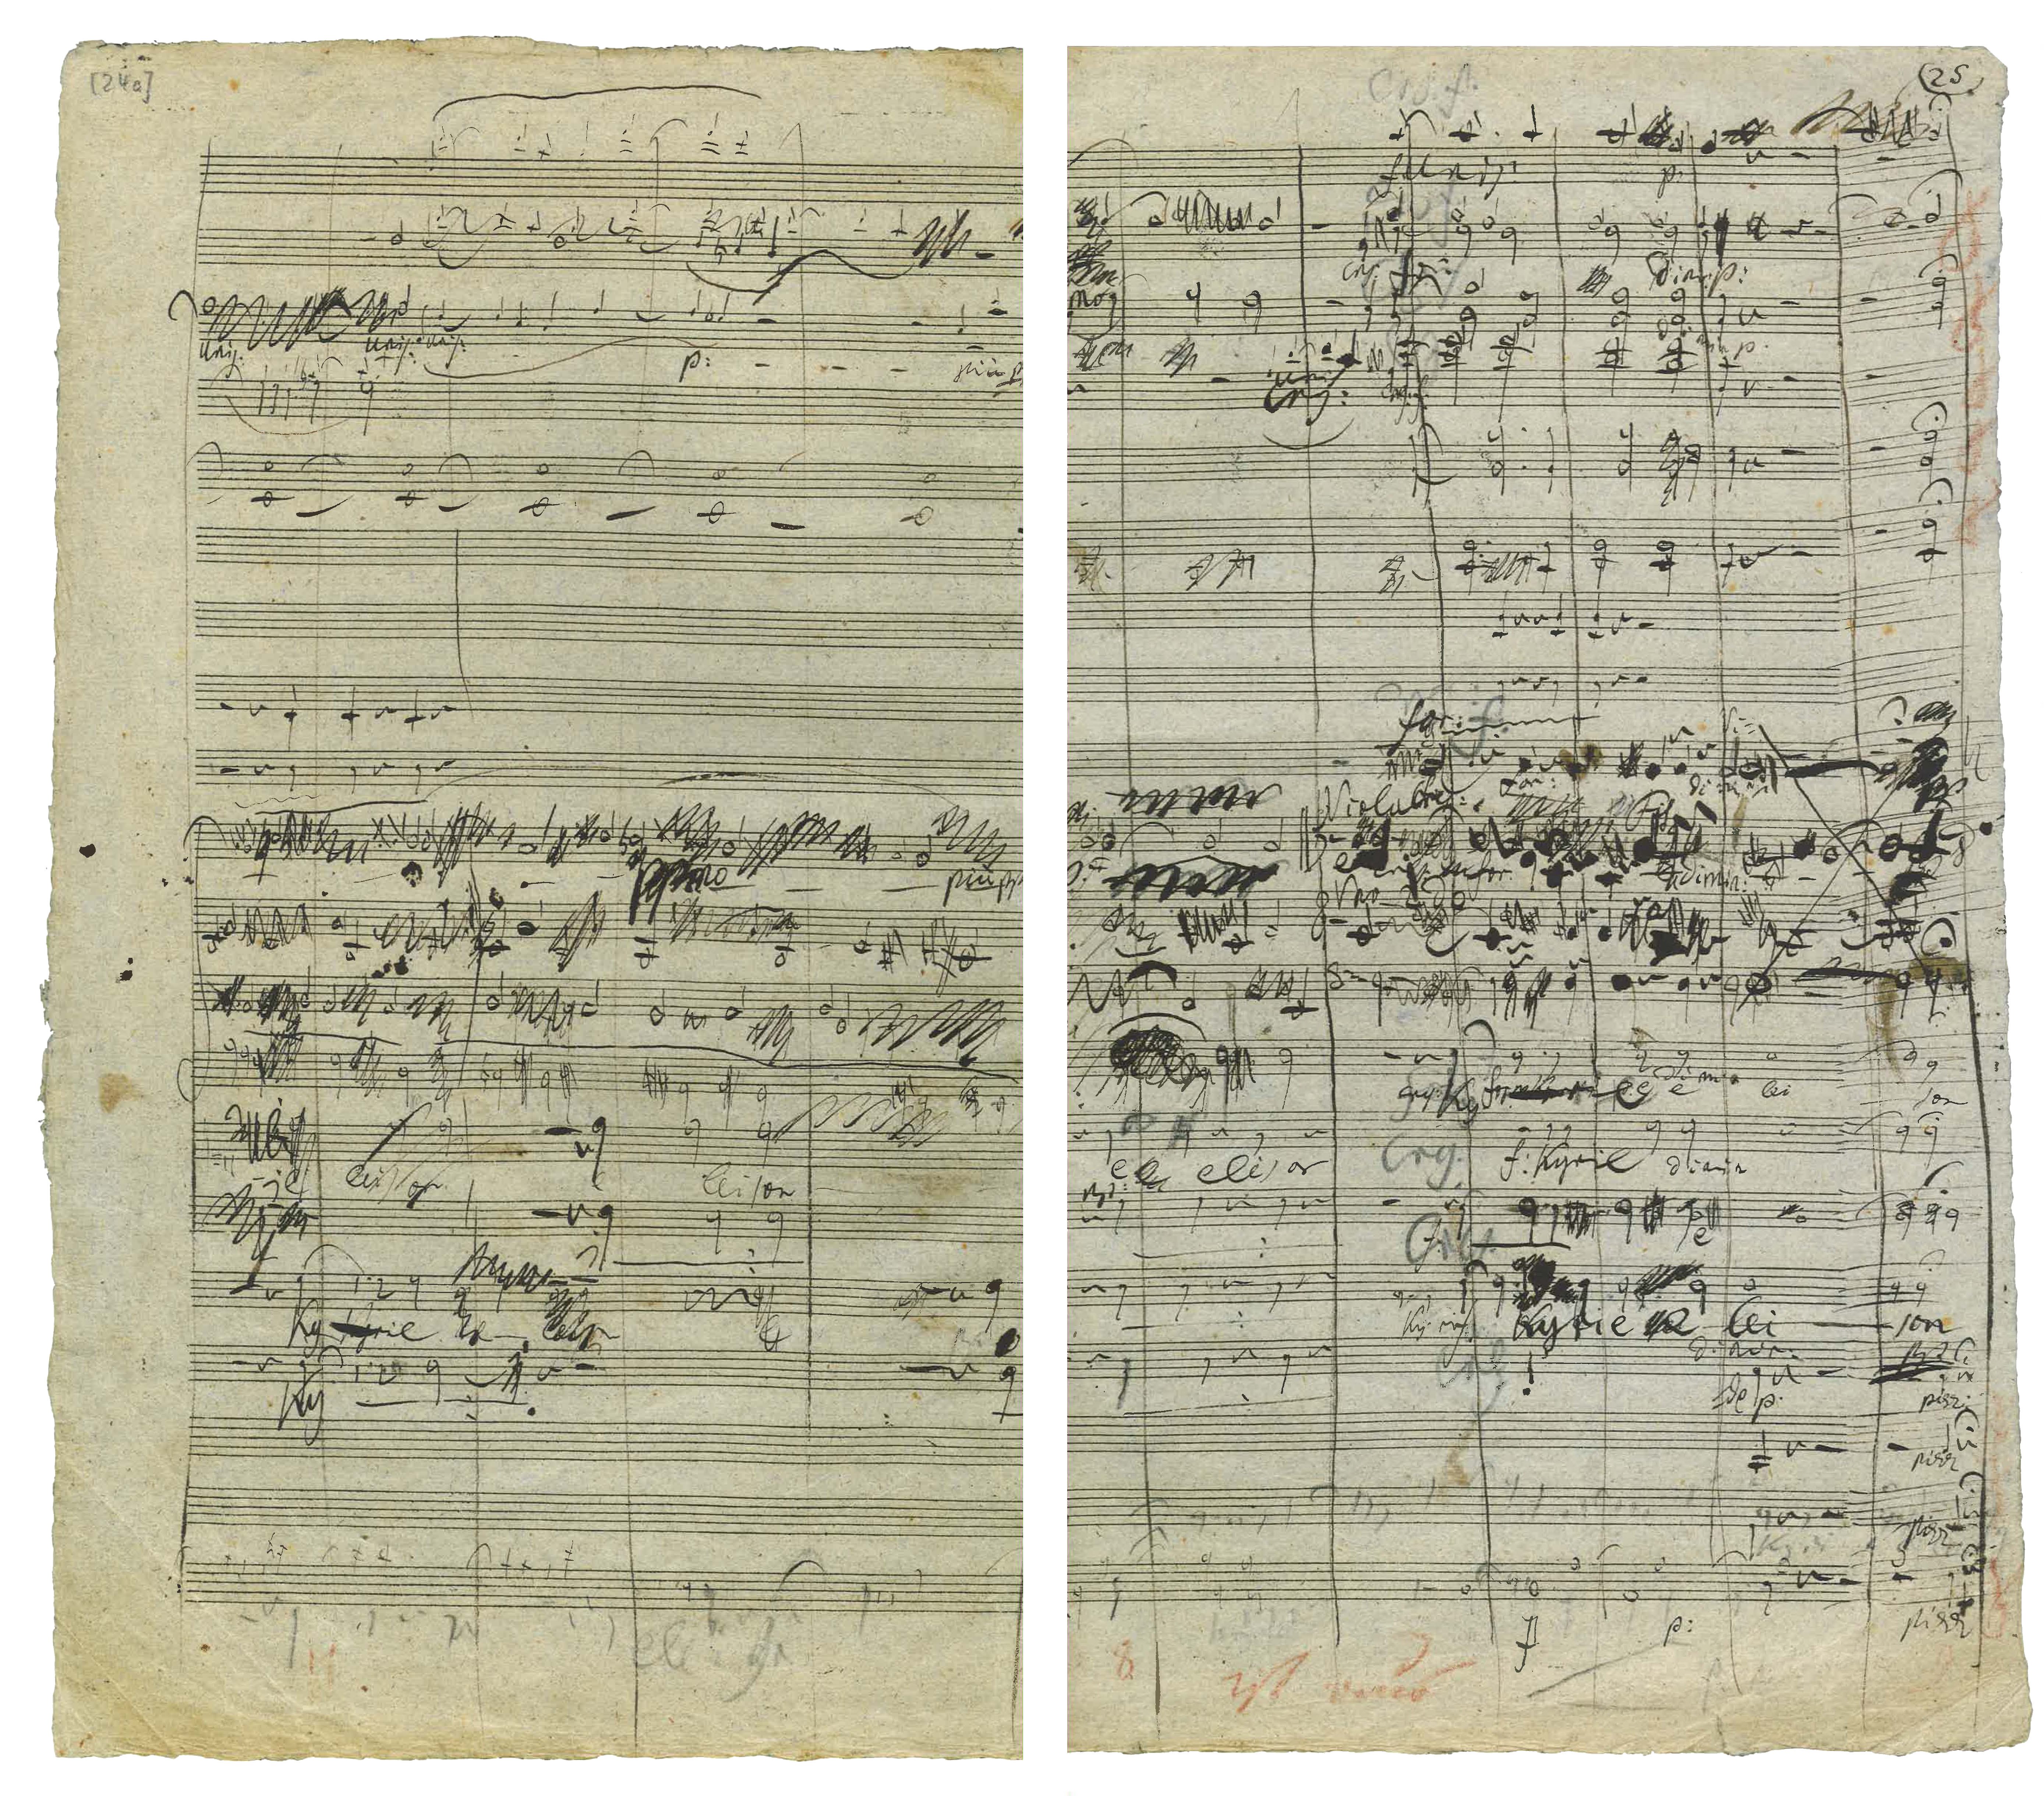 A yellowed page of scrawled music score.